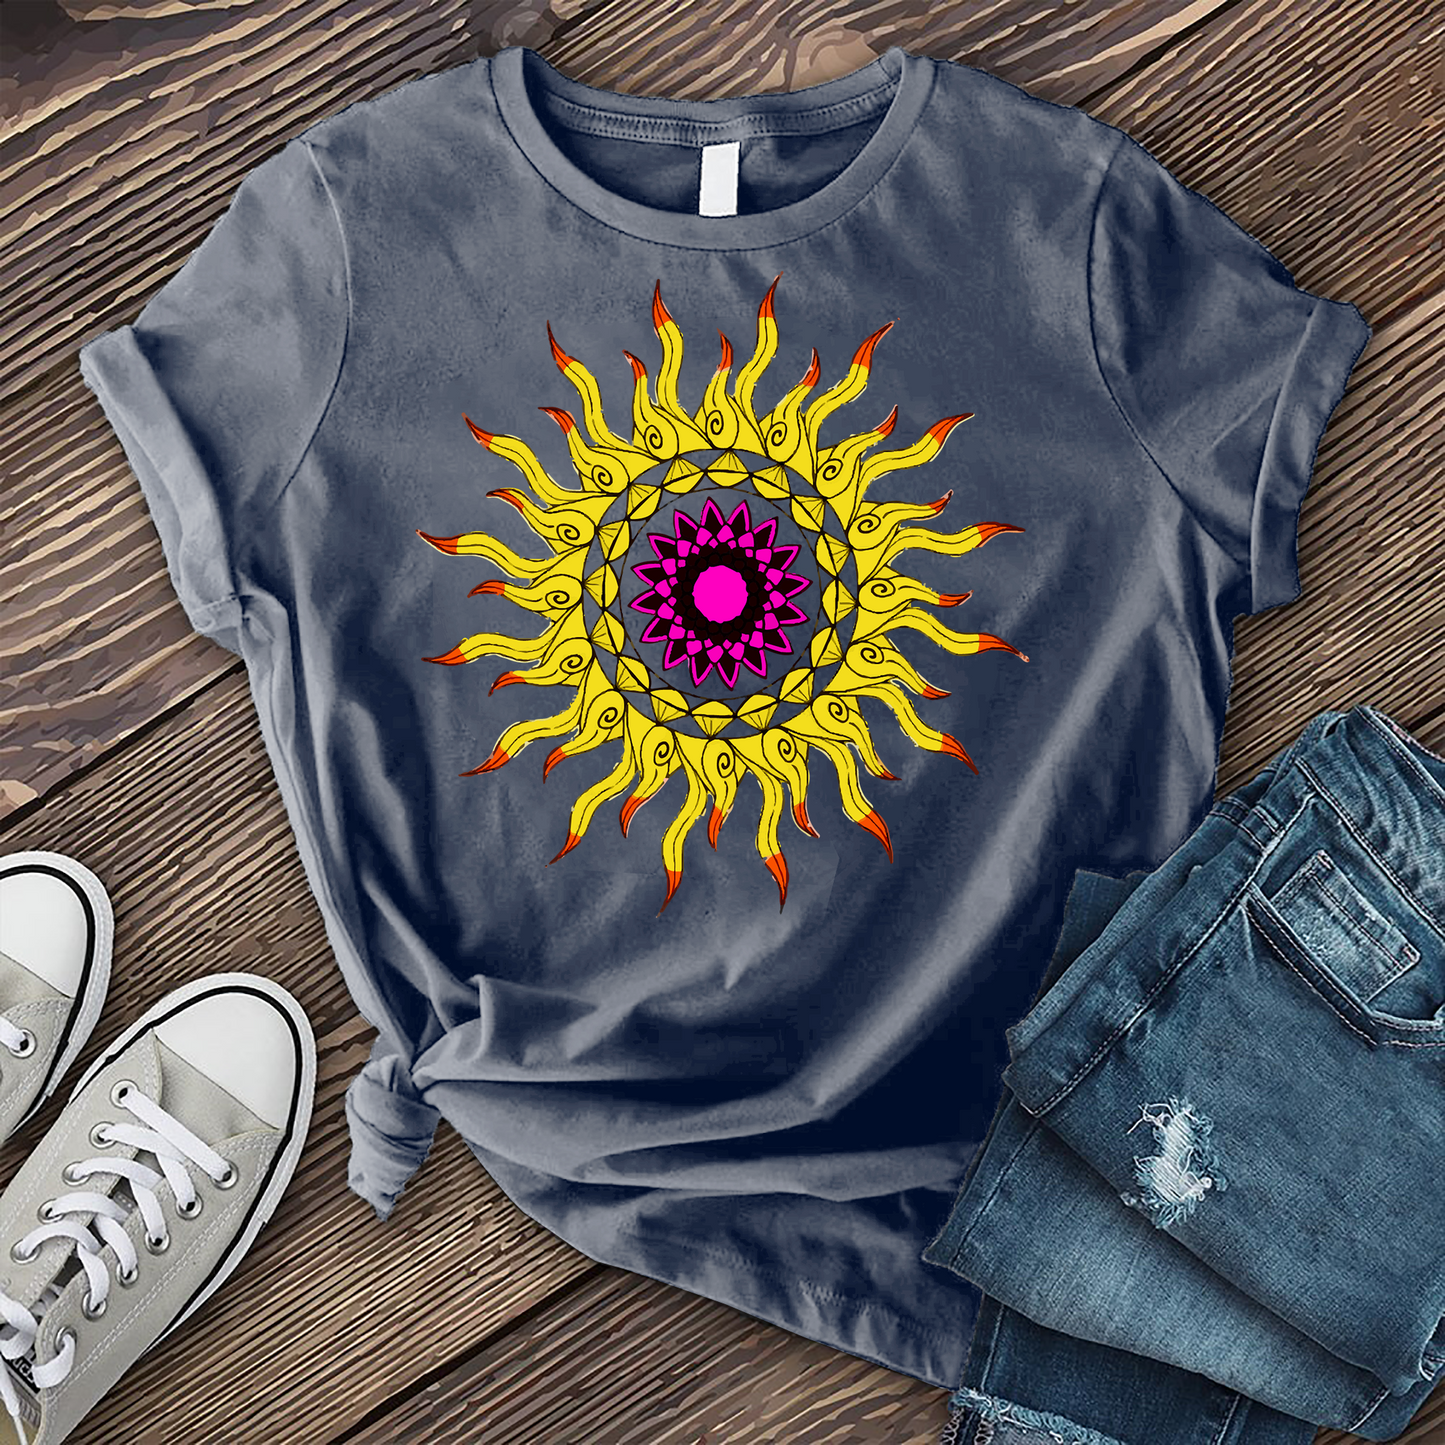 Celestial Sunshine T-shirt